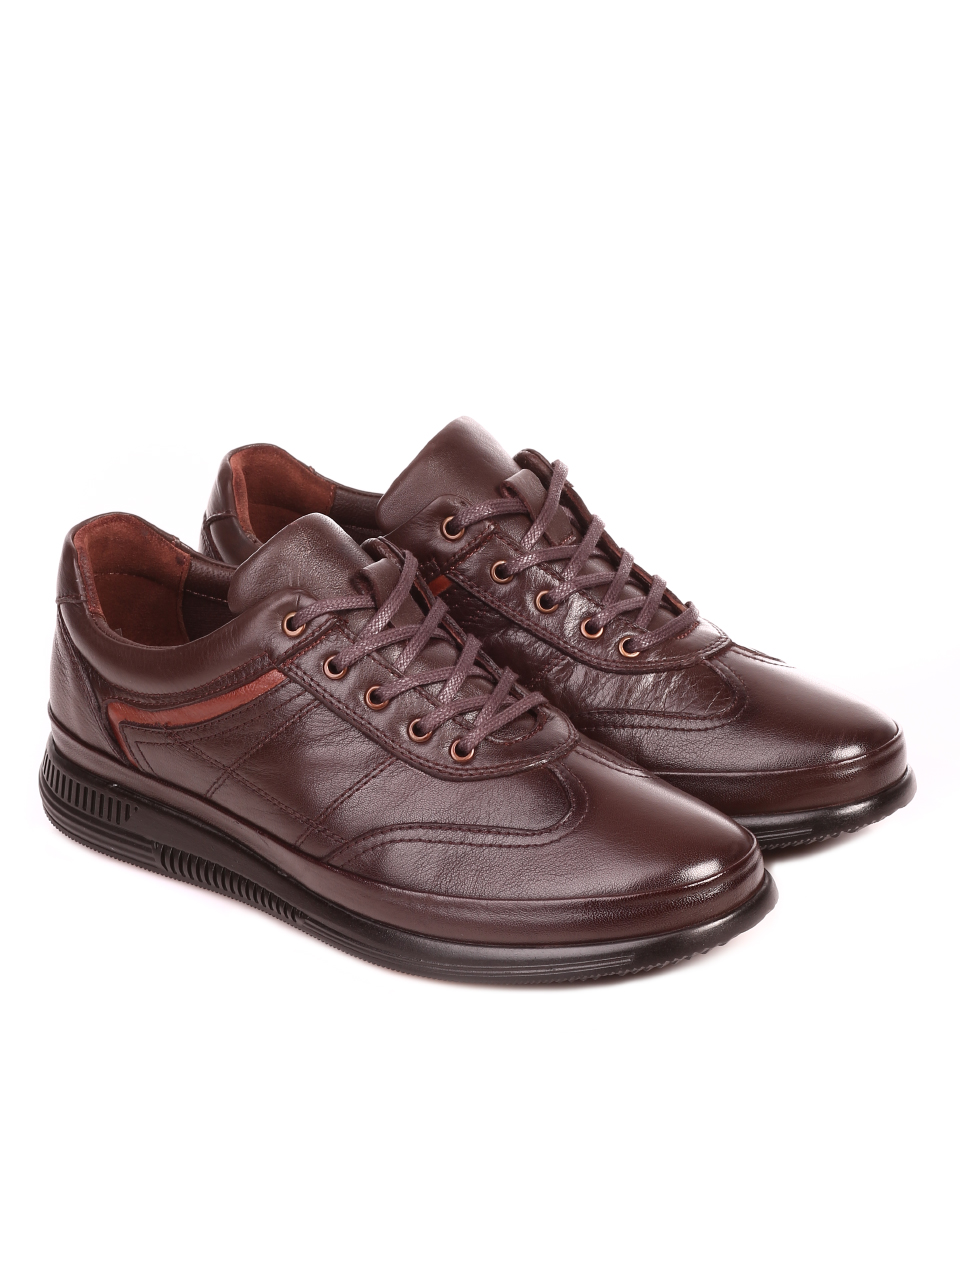 Ежедневни мъжки обувки от естествена кожа 7AT-21881 brown